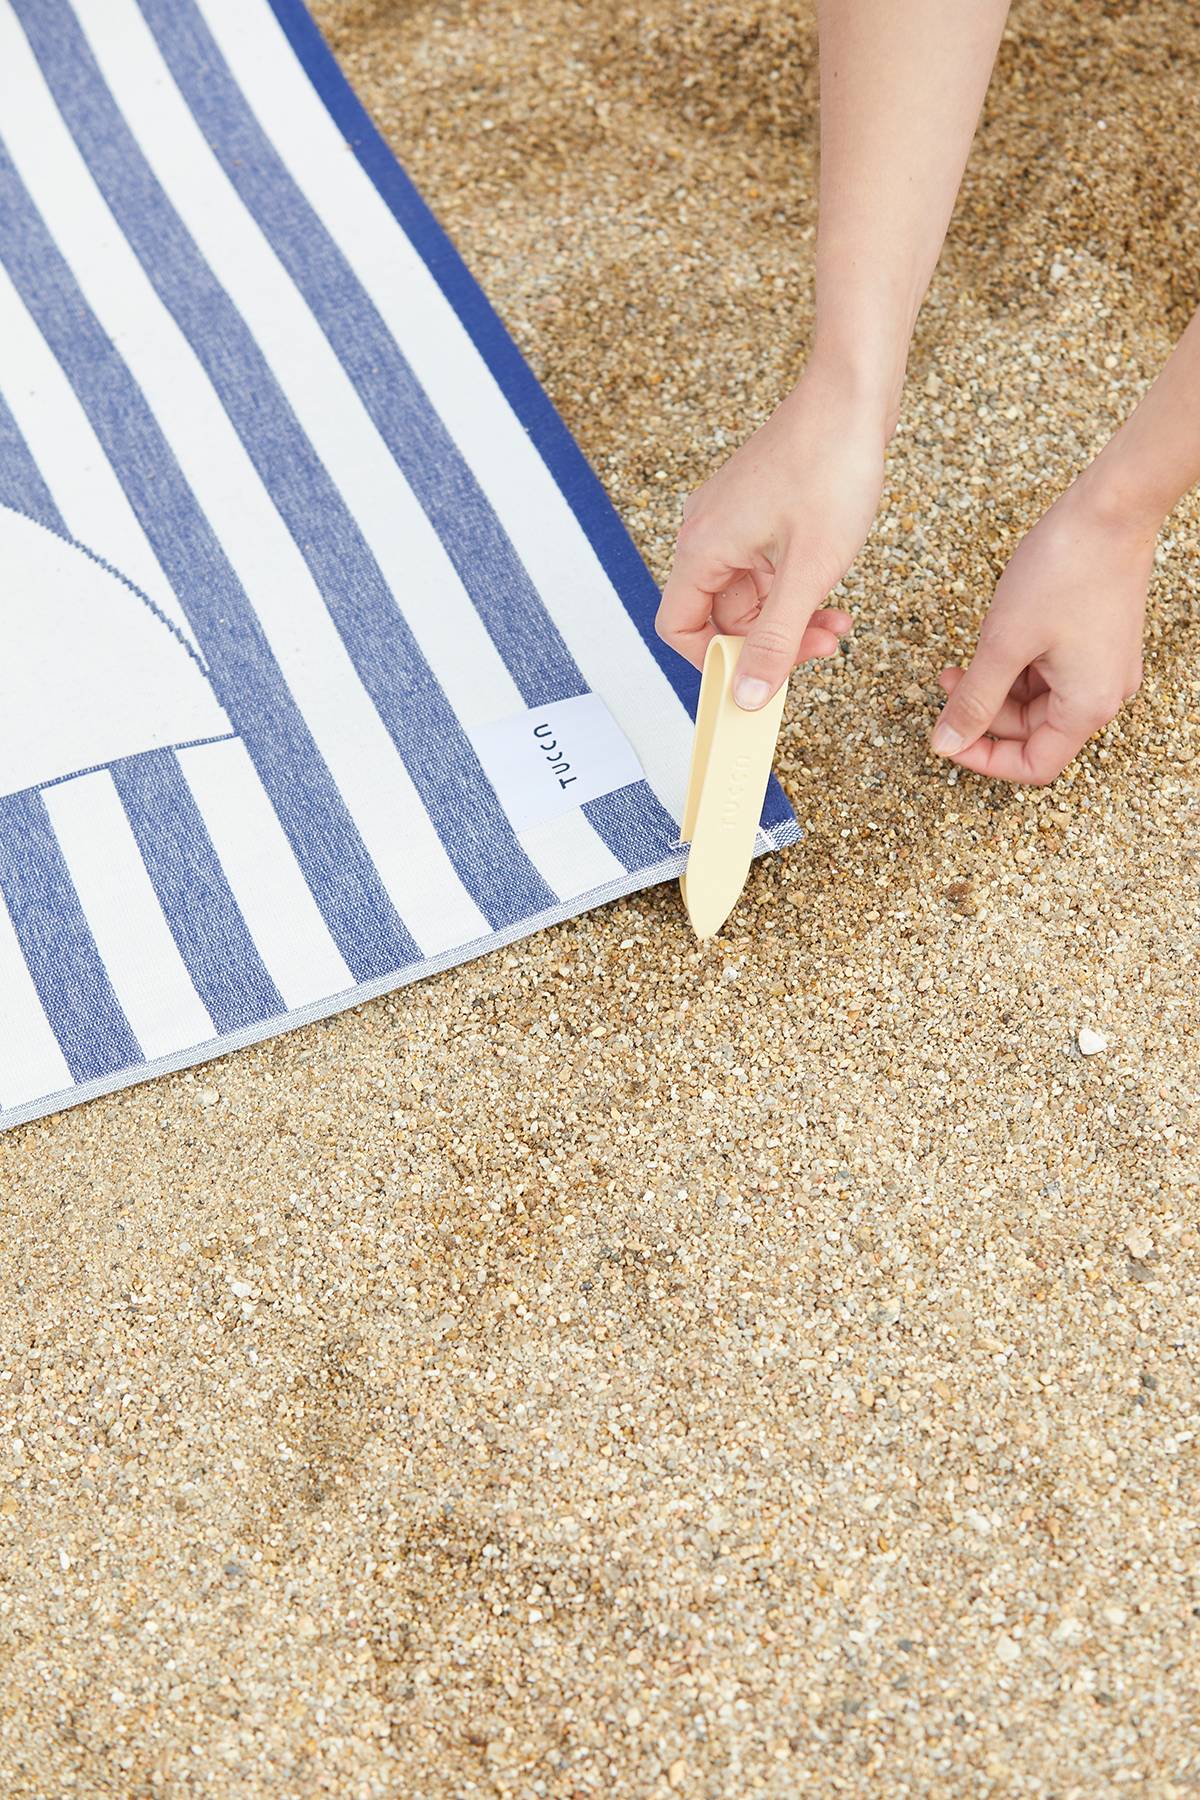 Tucca es la marca de toallas de playa española que ni se vuelan ni